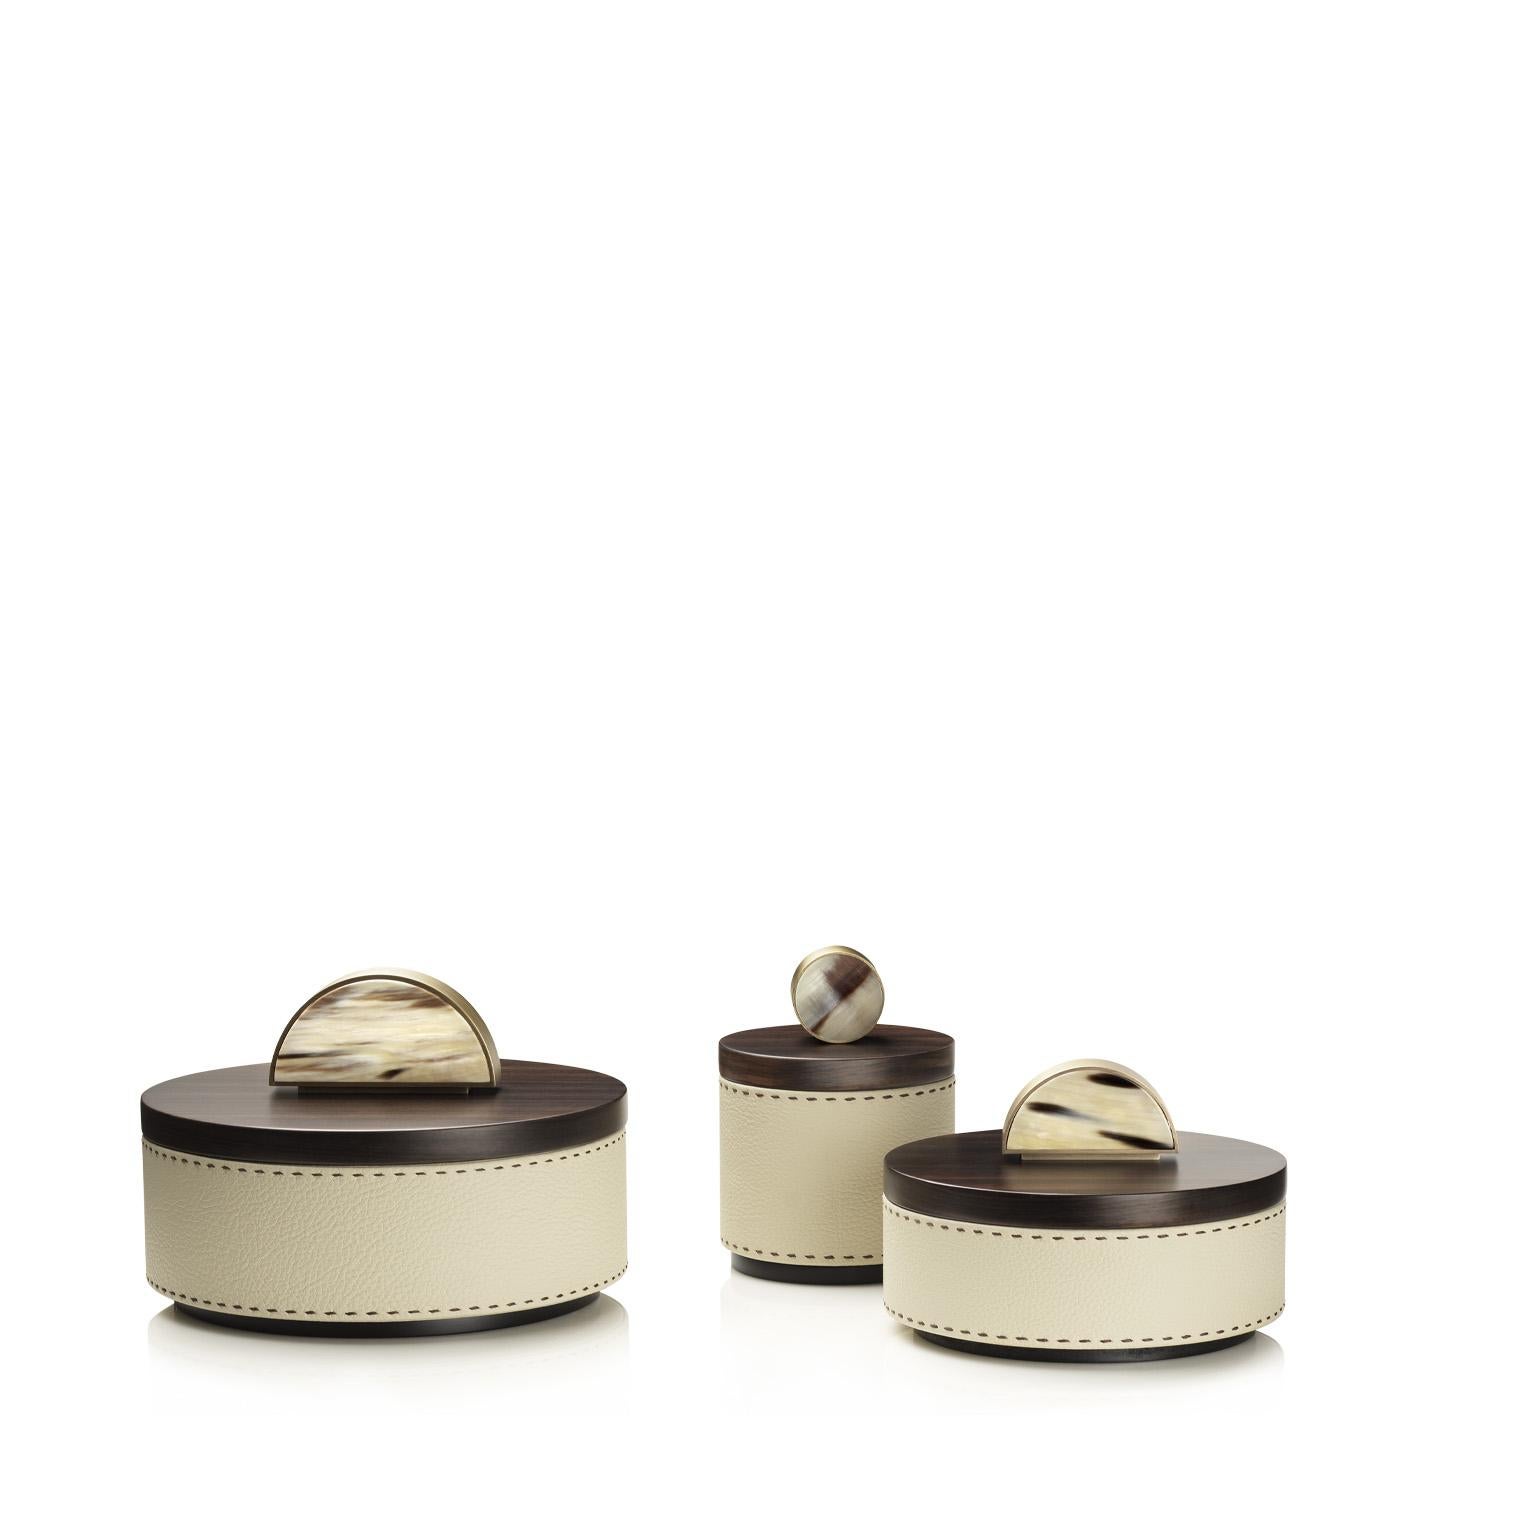 Agneta Round Box in Pebbled Leather with Handle in Corno Italiano, Mod. 4488 In New Condition For Sale In Recanati, Macerata